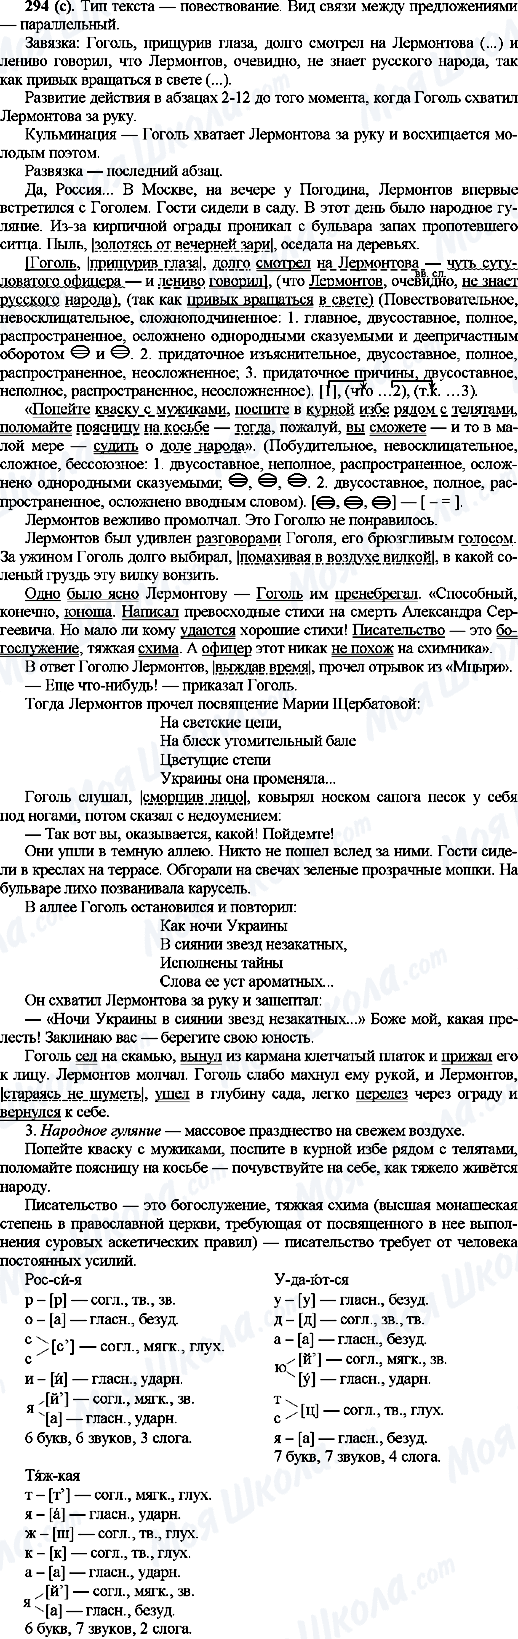 ГДЗ Русский язык 10 класс страница 294(с)